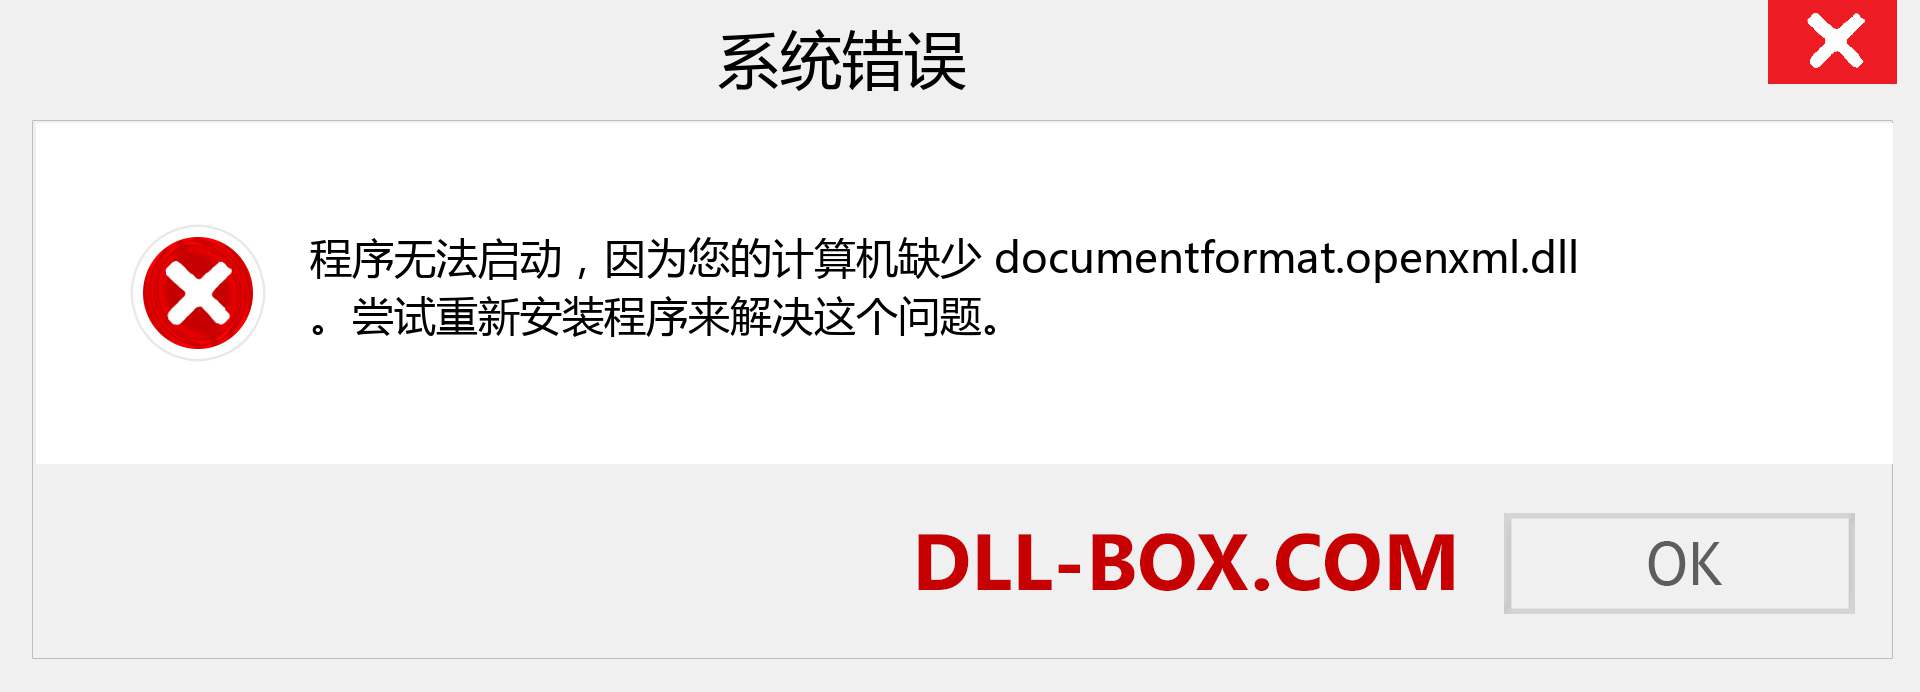 documentformat.openxml.dll 文件丢失？。 适用于 Windows 7、8、10 的下载 - 修复 Windows、照片、图像上的 documentformat.openxml dll 丢失错误